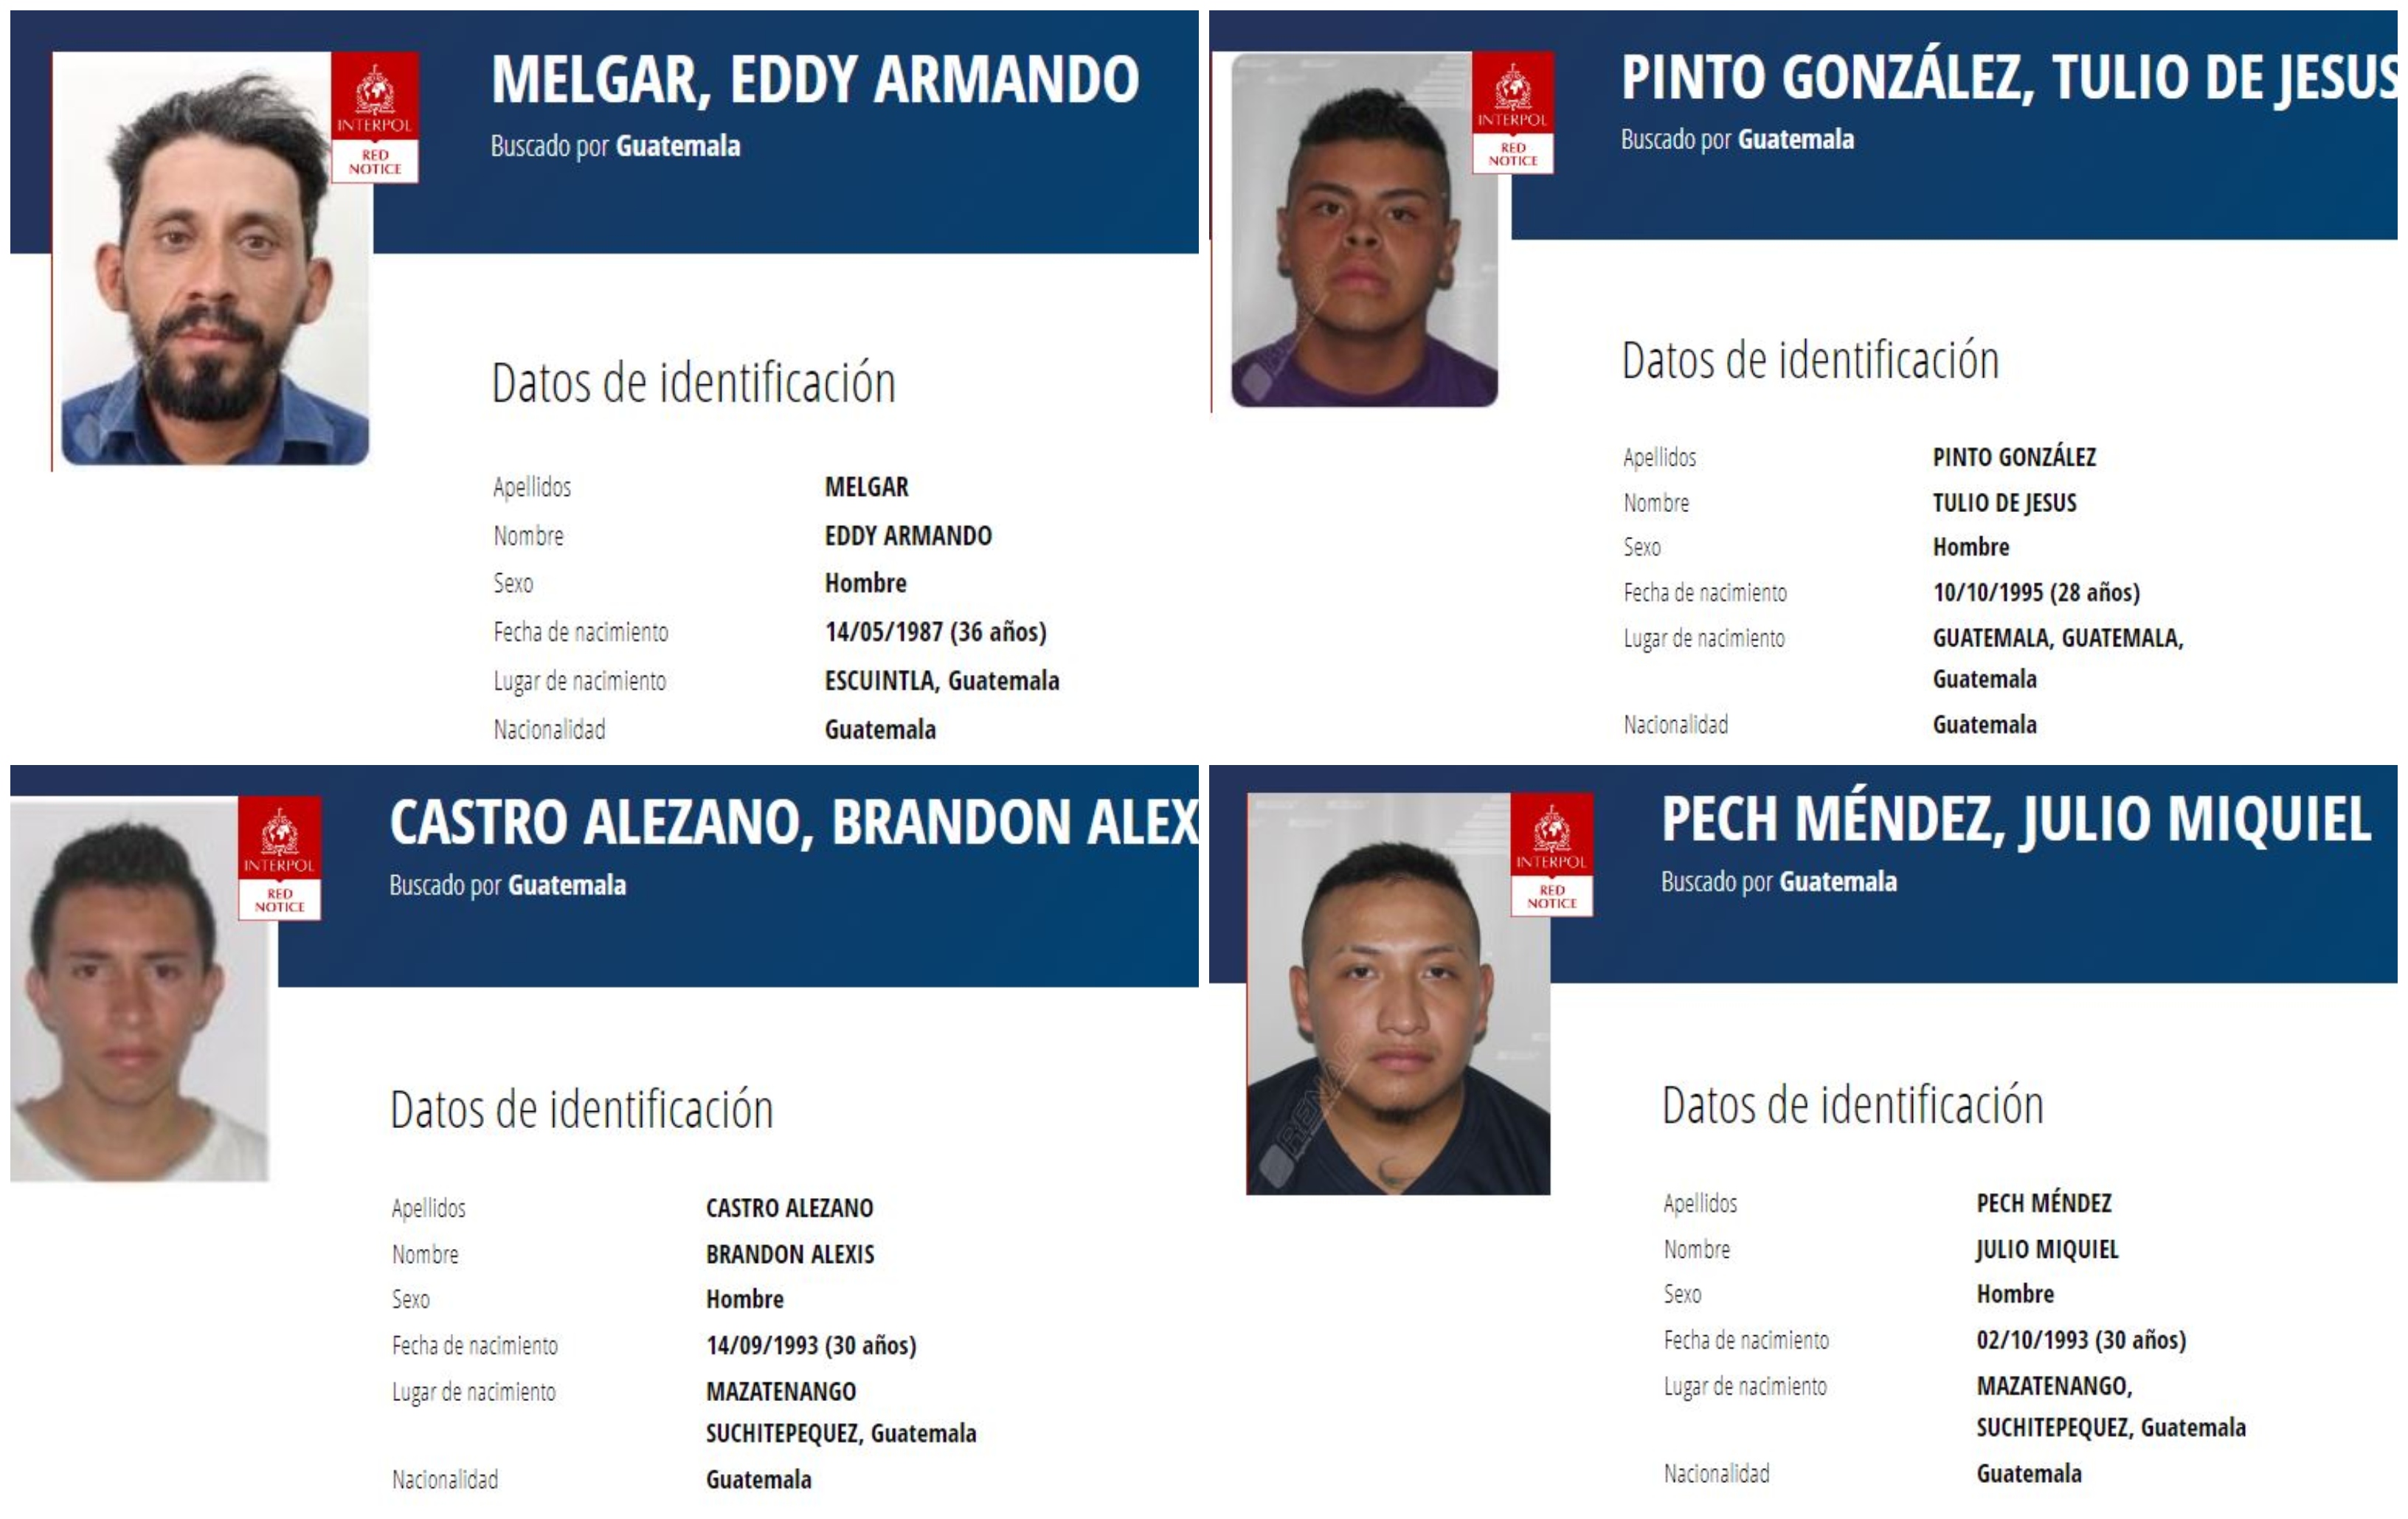 Estos son cuatro de los once guatemaltecos con alerta roja activa en Interpol. Los buscan por cometer delitos sexuales y contra la vida, entre otros. (Foto Prensa Libre: Interpol).